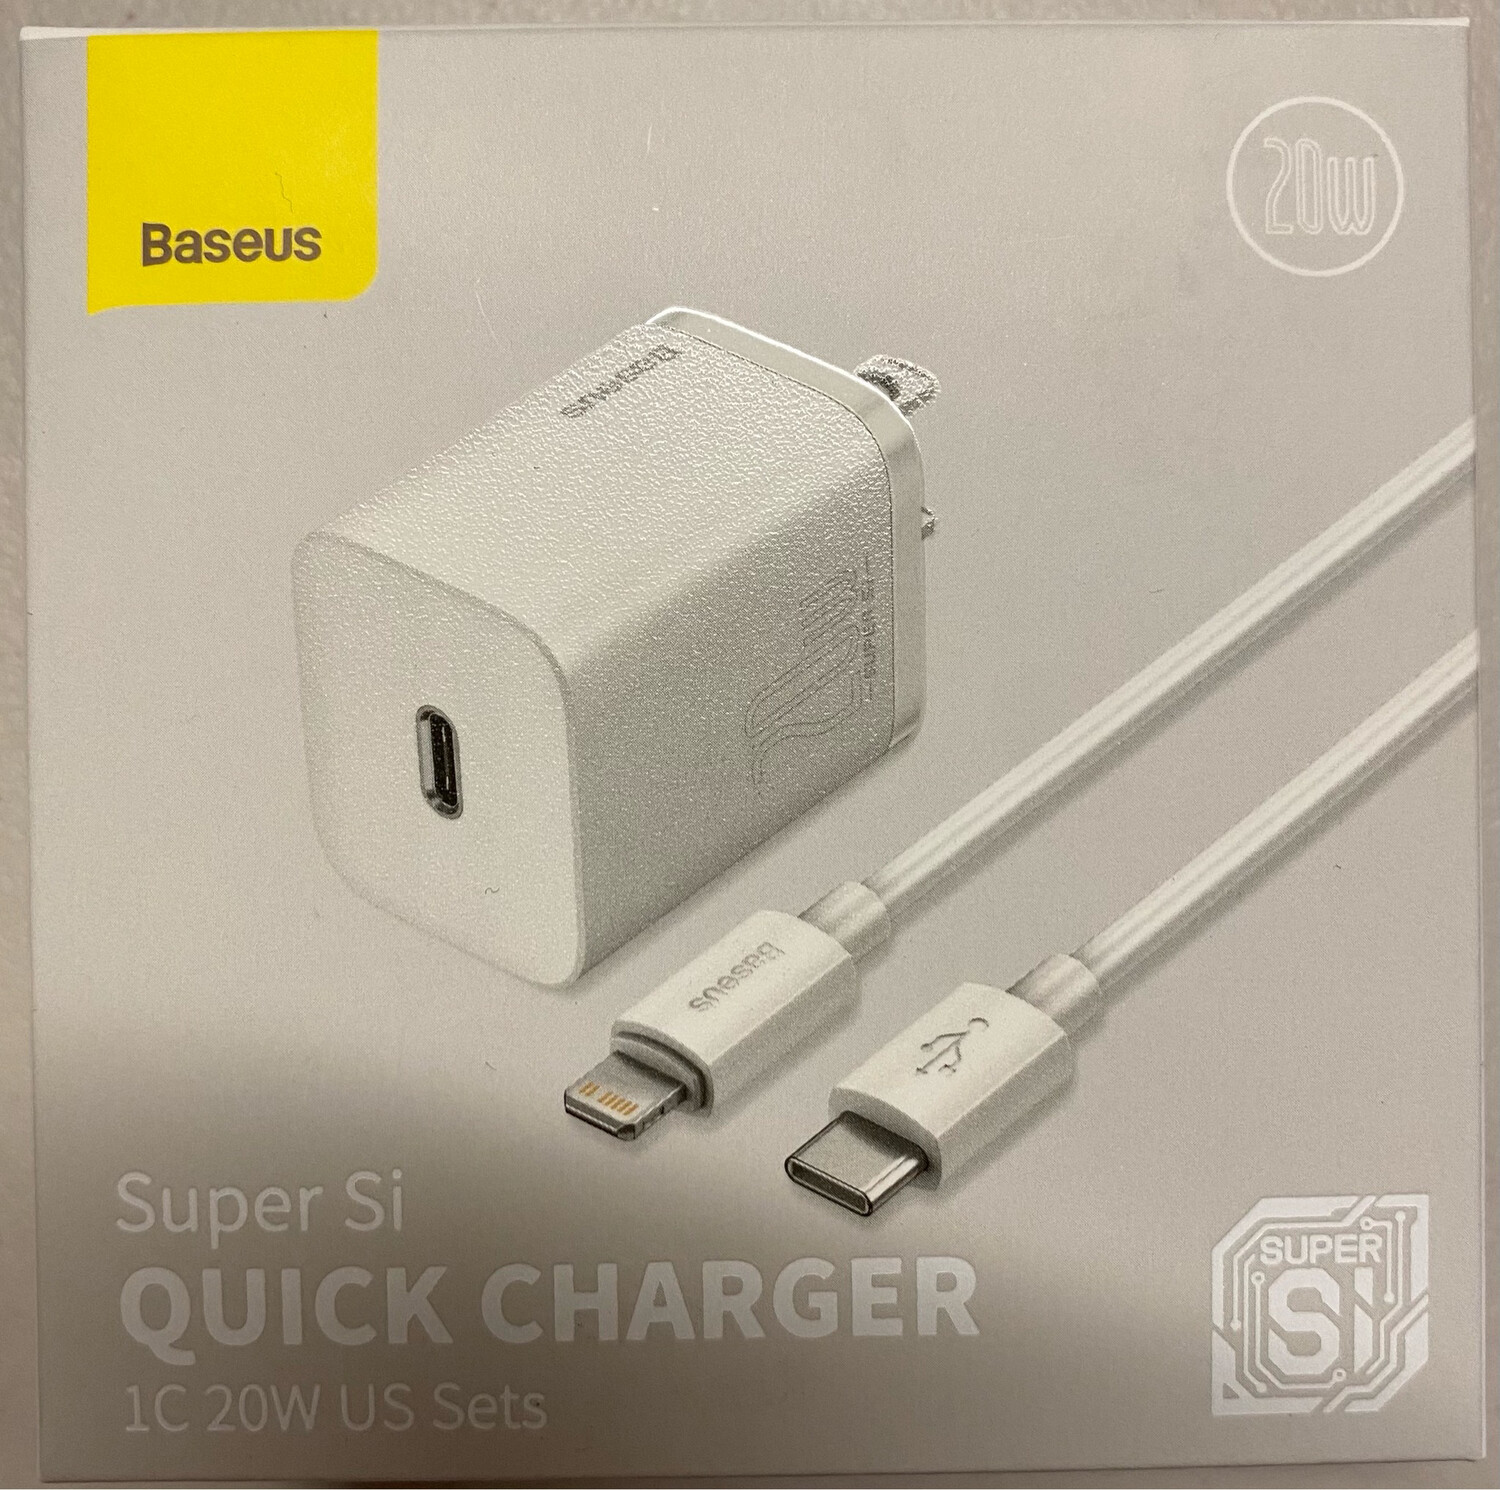 Baseus Super Si Quick Charger 1C 20W US Sets